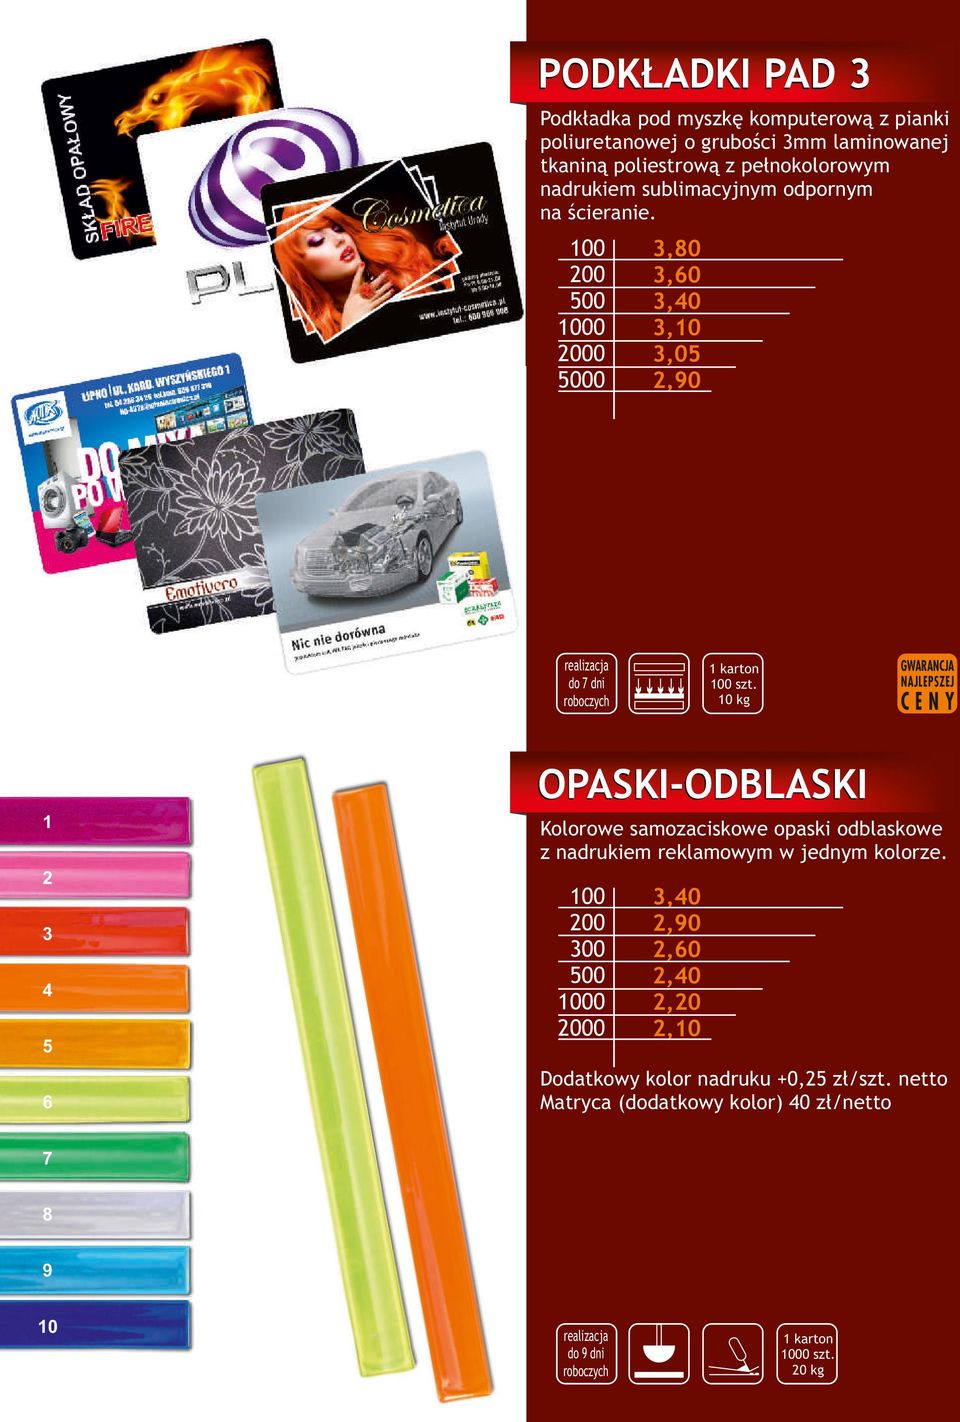 10 kg OPASKI-ODBLASKI 1 2 3 4 5 6 Kolorowe samozaciskowe opaski odblaskowe z nadrukiem reklamowym w jednym kolorze.